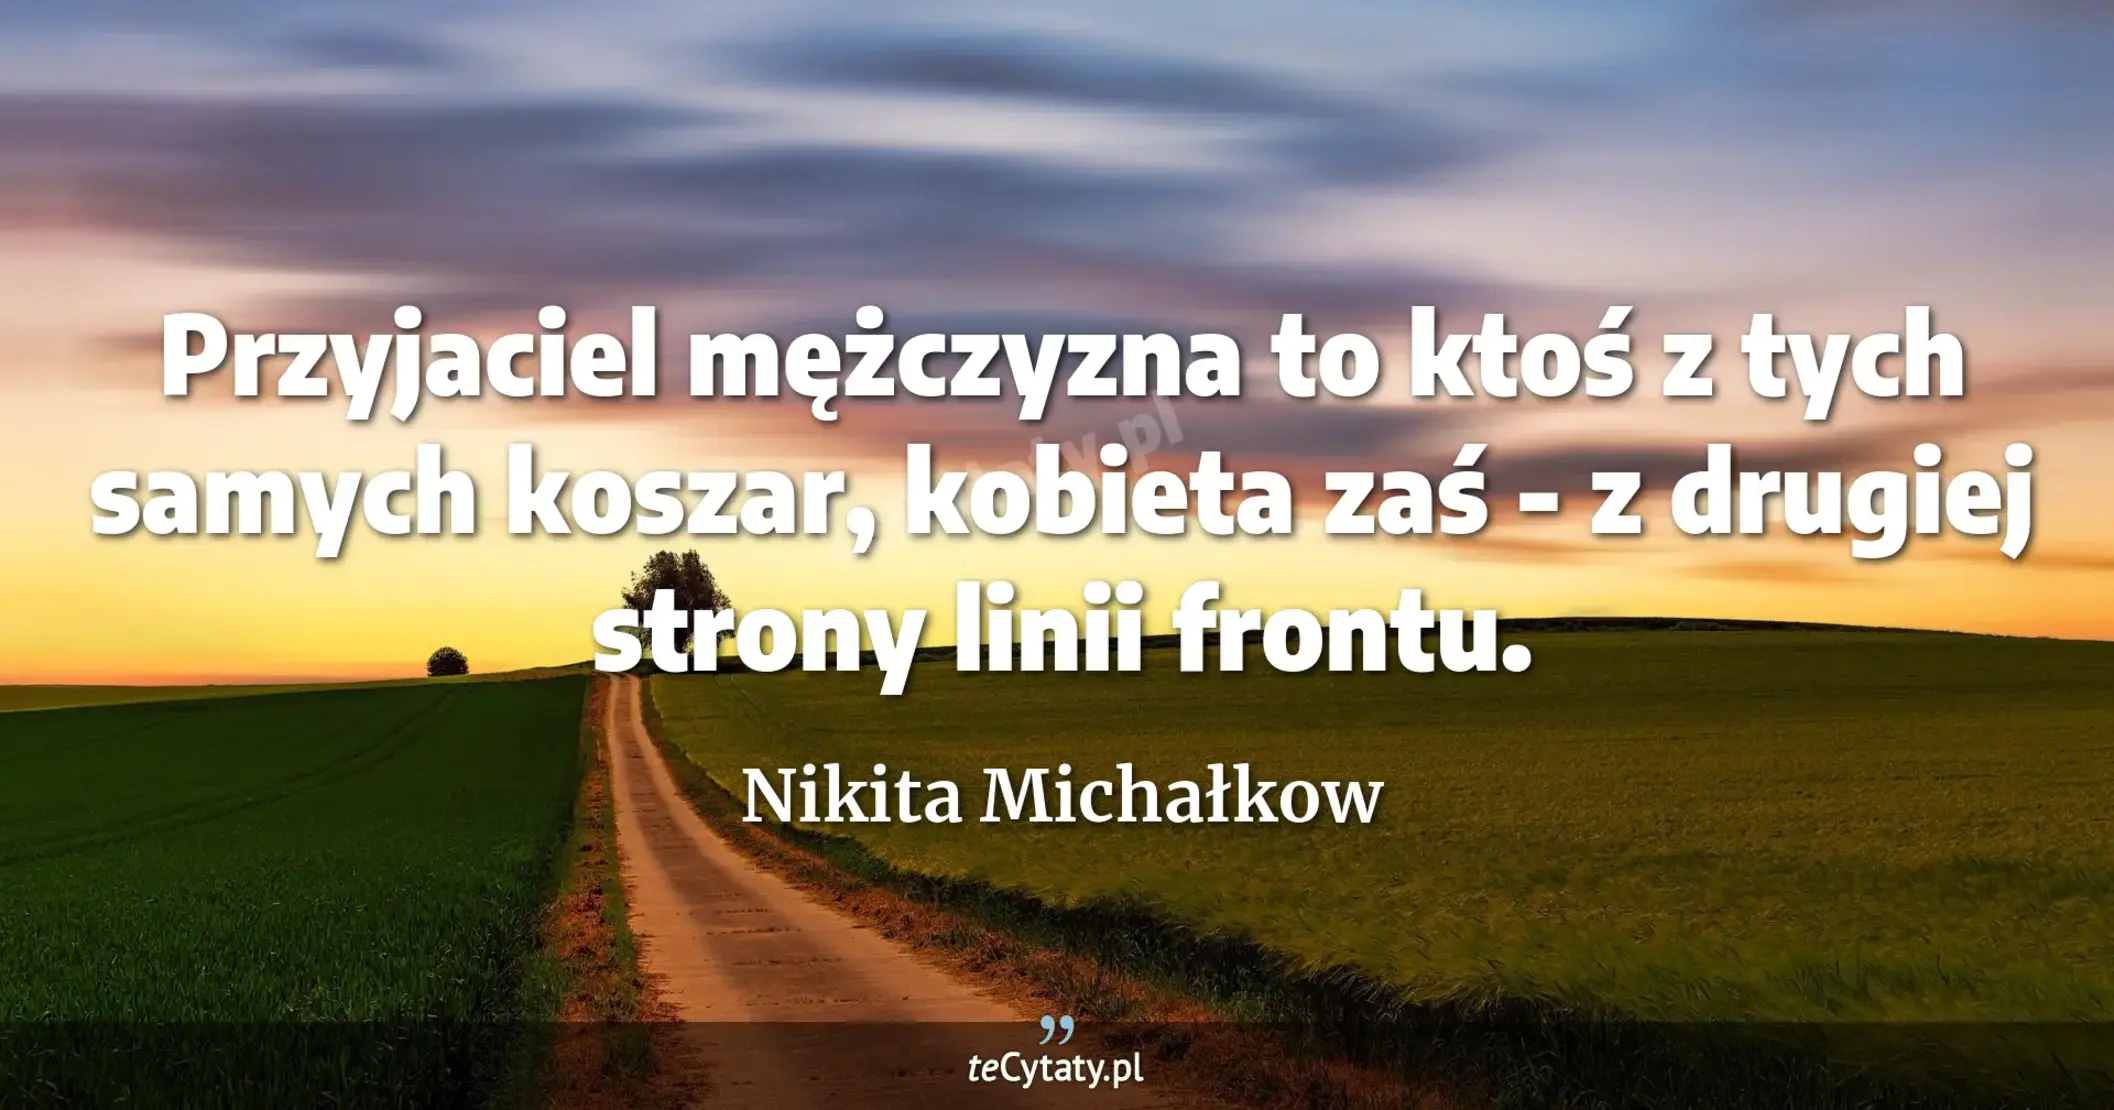 Przyjaciel mężczyzna to ktoś z tych samych koszar, kobieta zaś - z drugiej strony linii frontu. - Nikita Michałkow